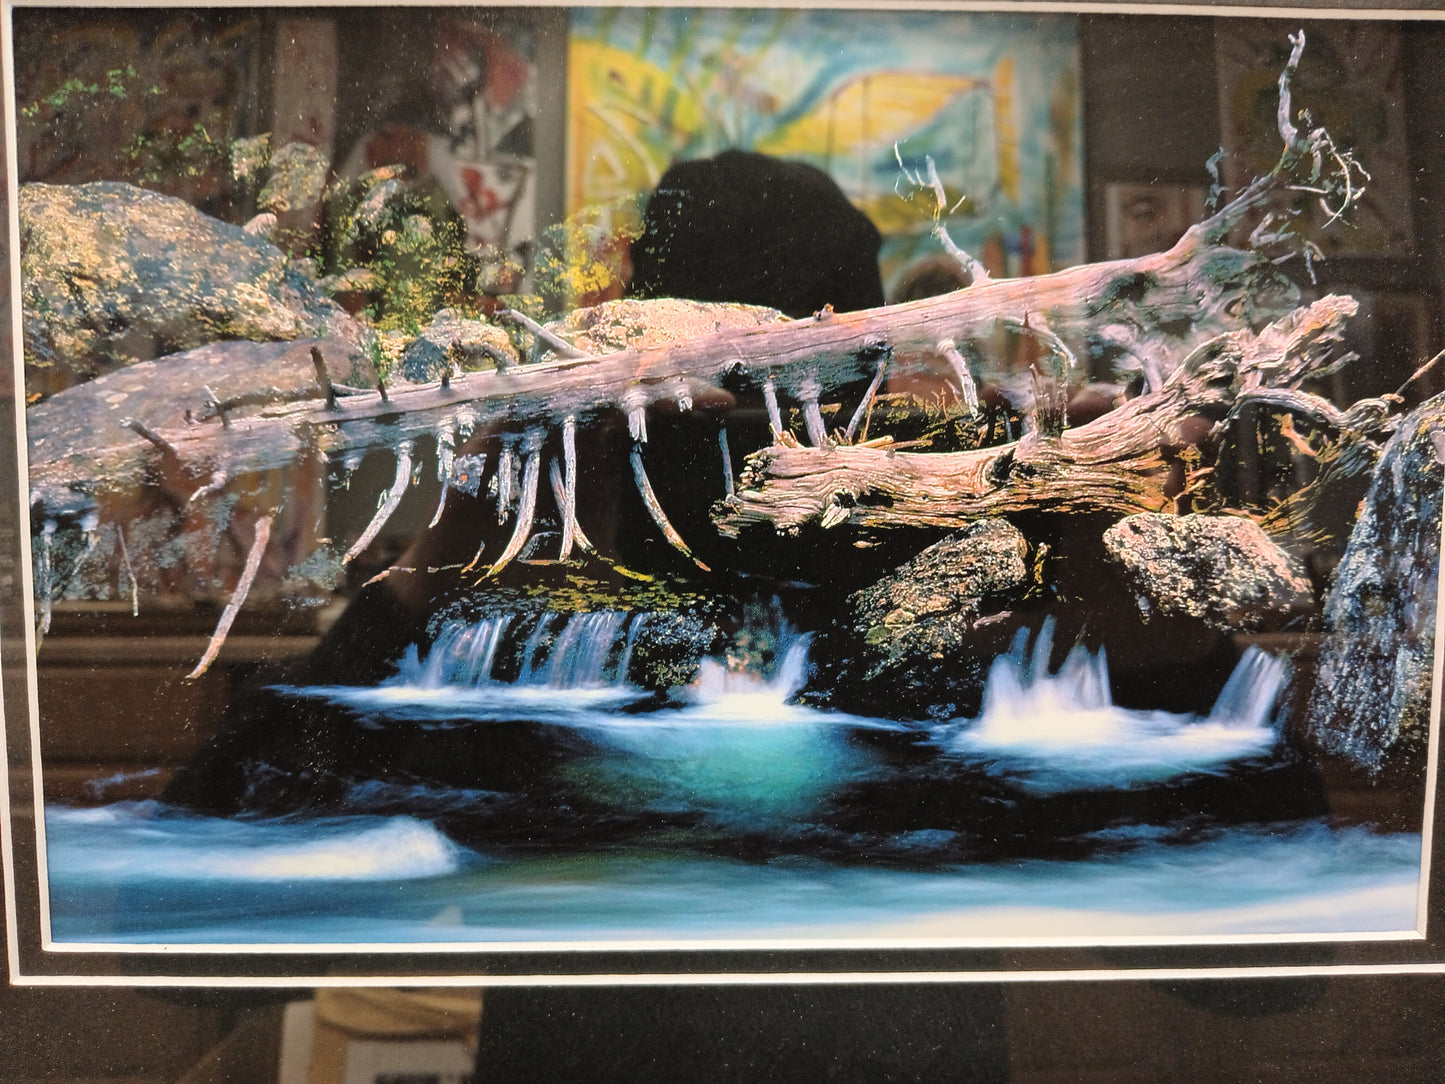 Log Over A Stream Wall Art Photograph